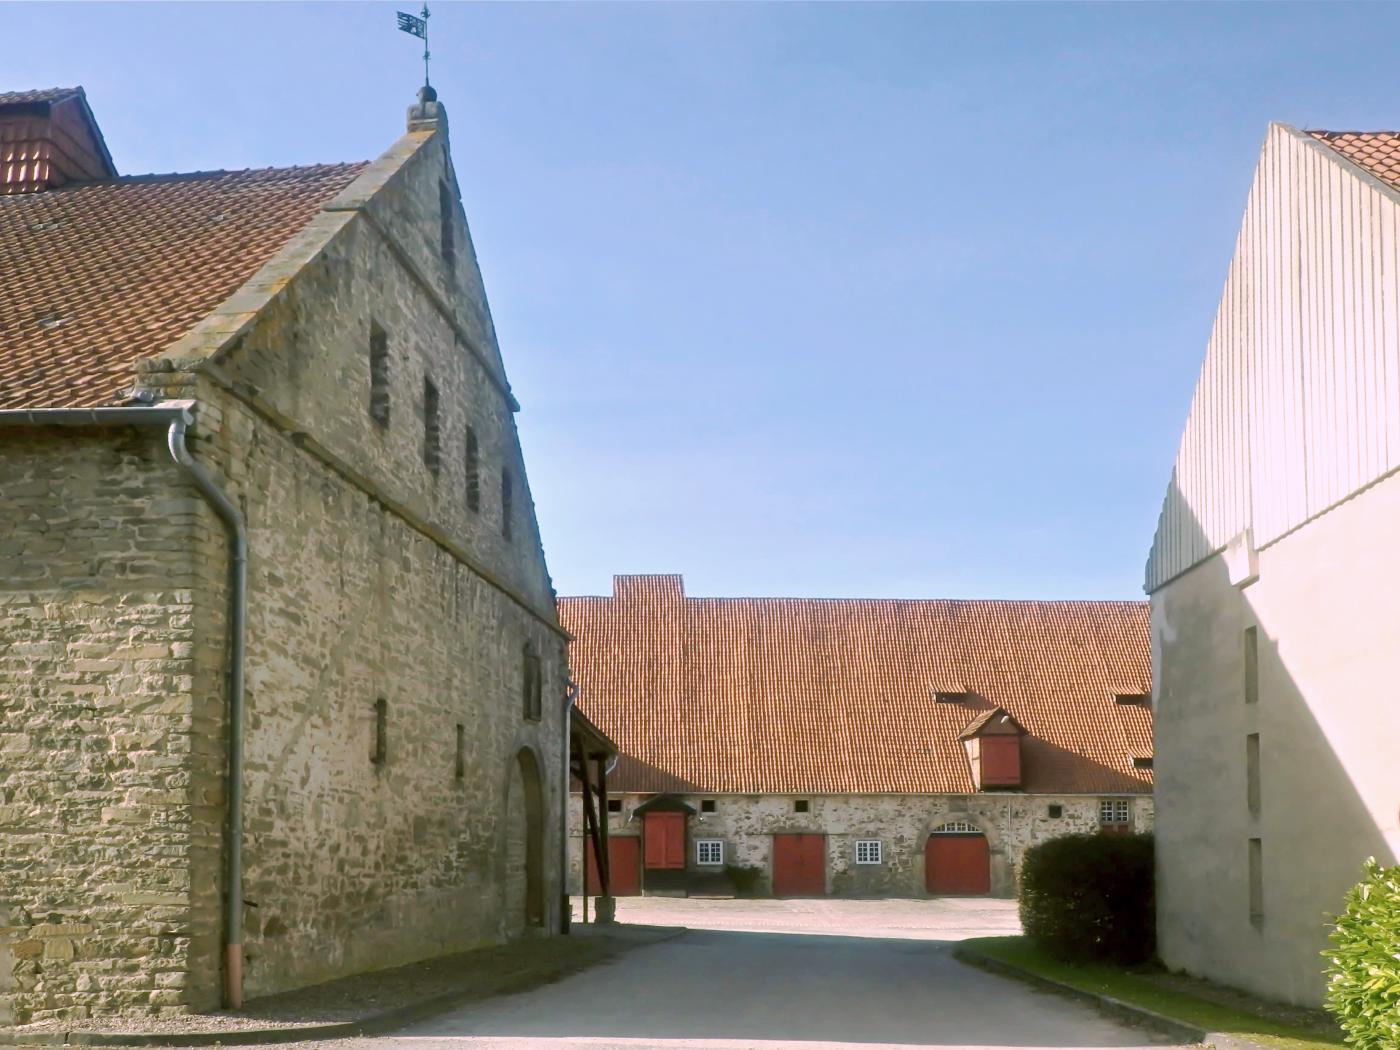 Domäne Schloss Varenholz